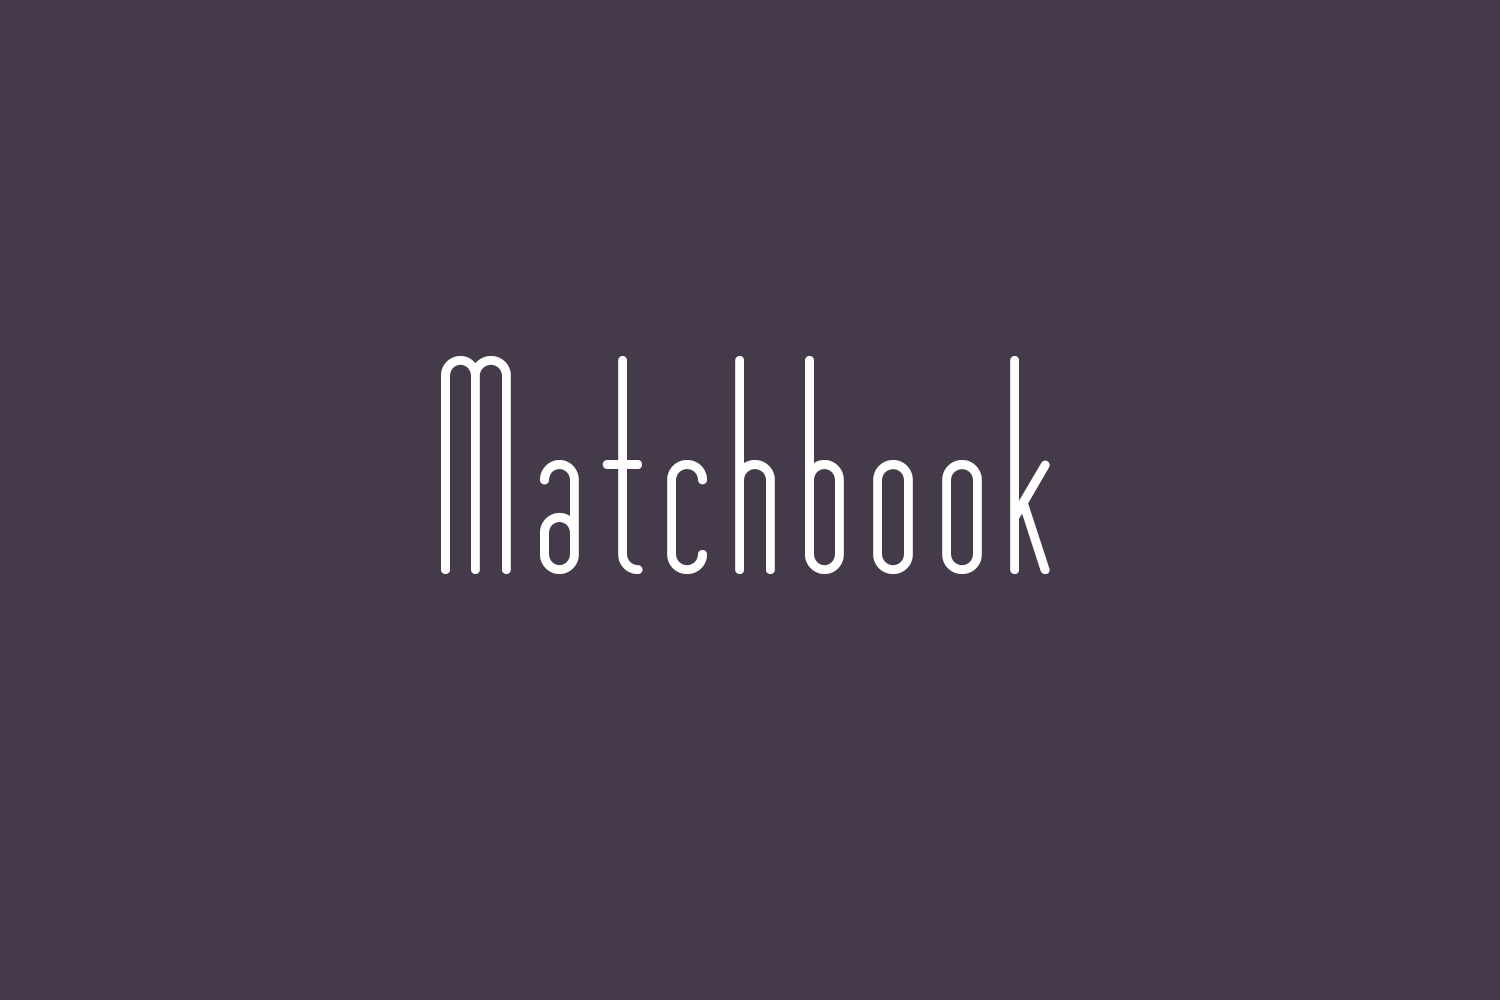 Matchbook